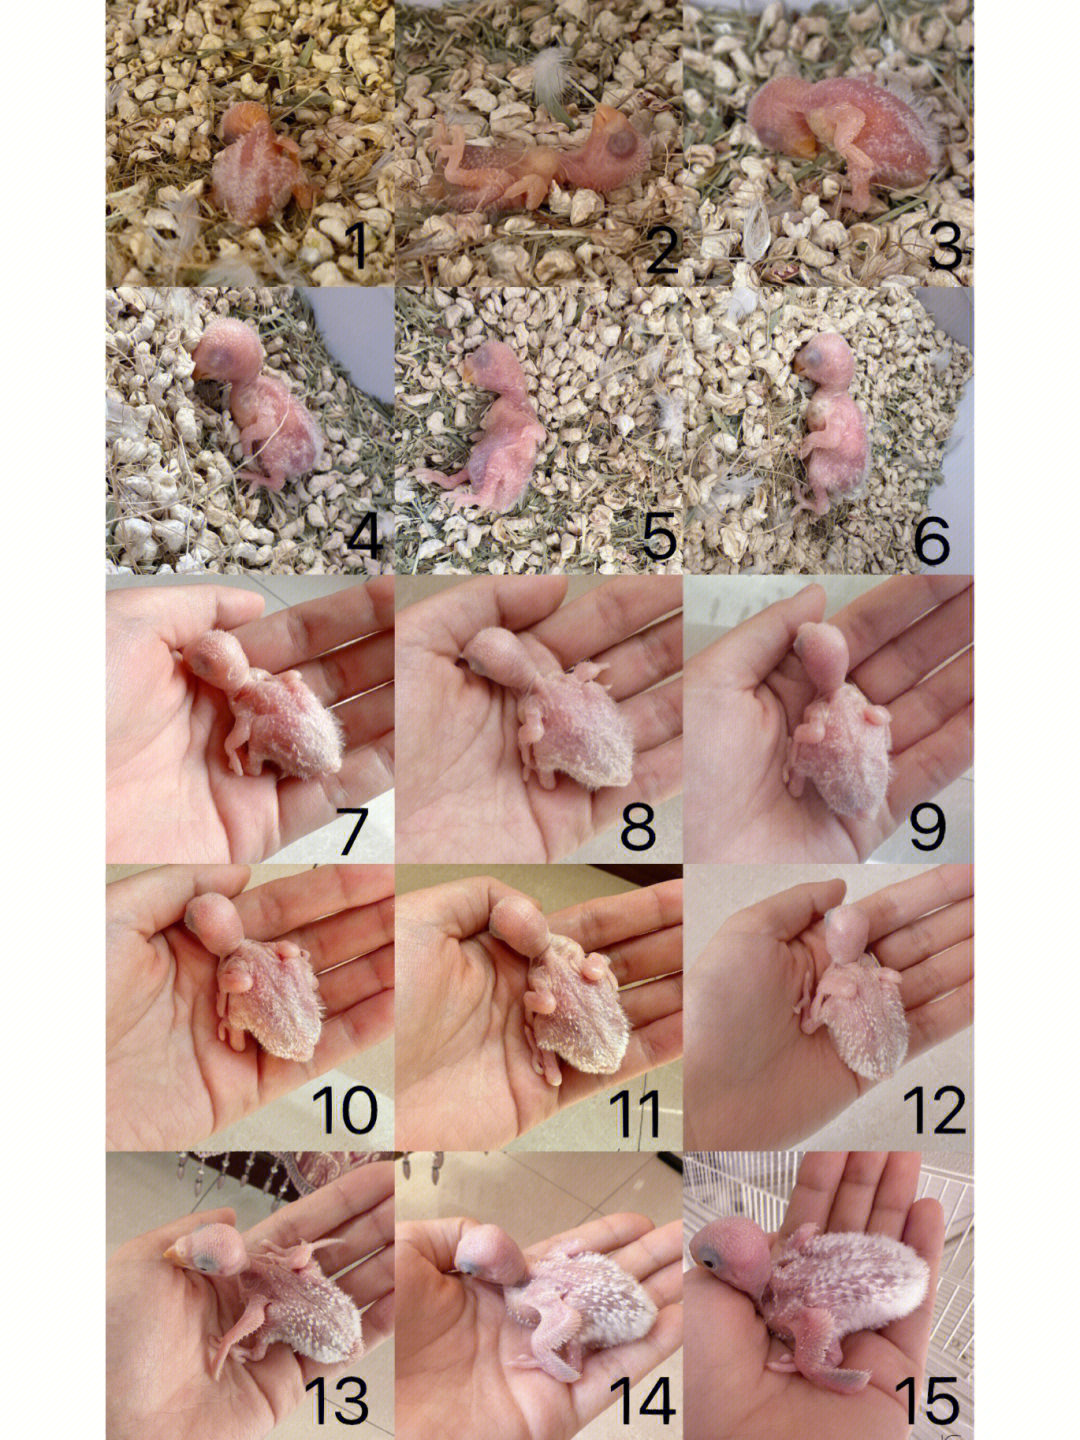 记录牡丹鹦鹉从出生到45天的变化